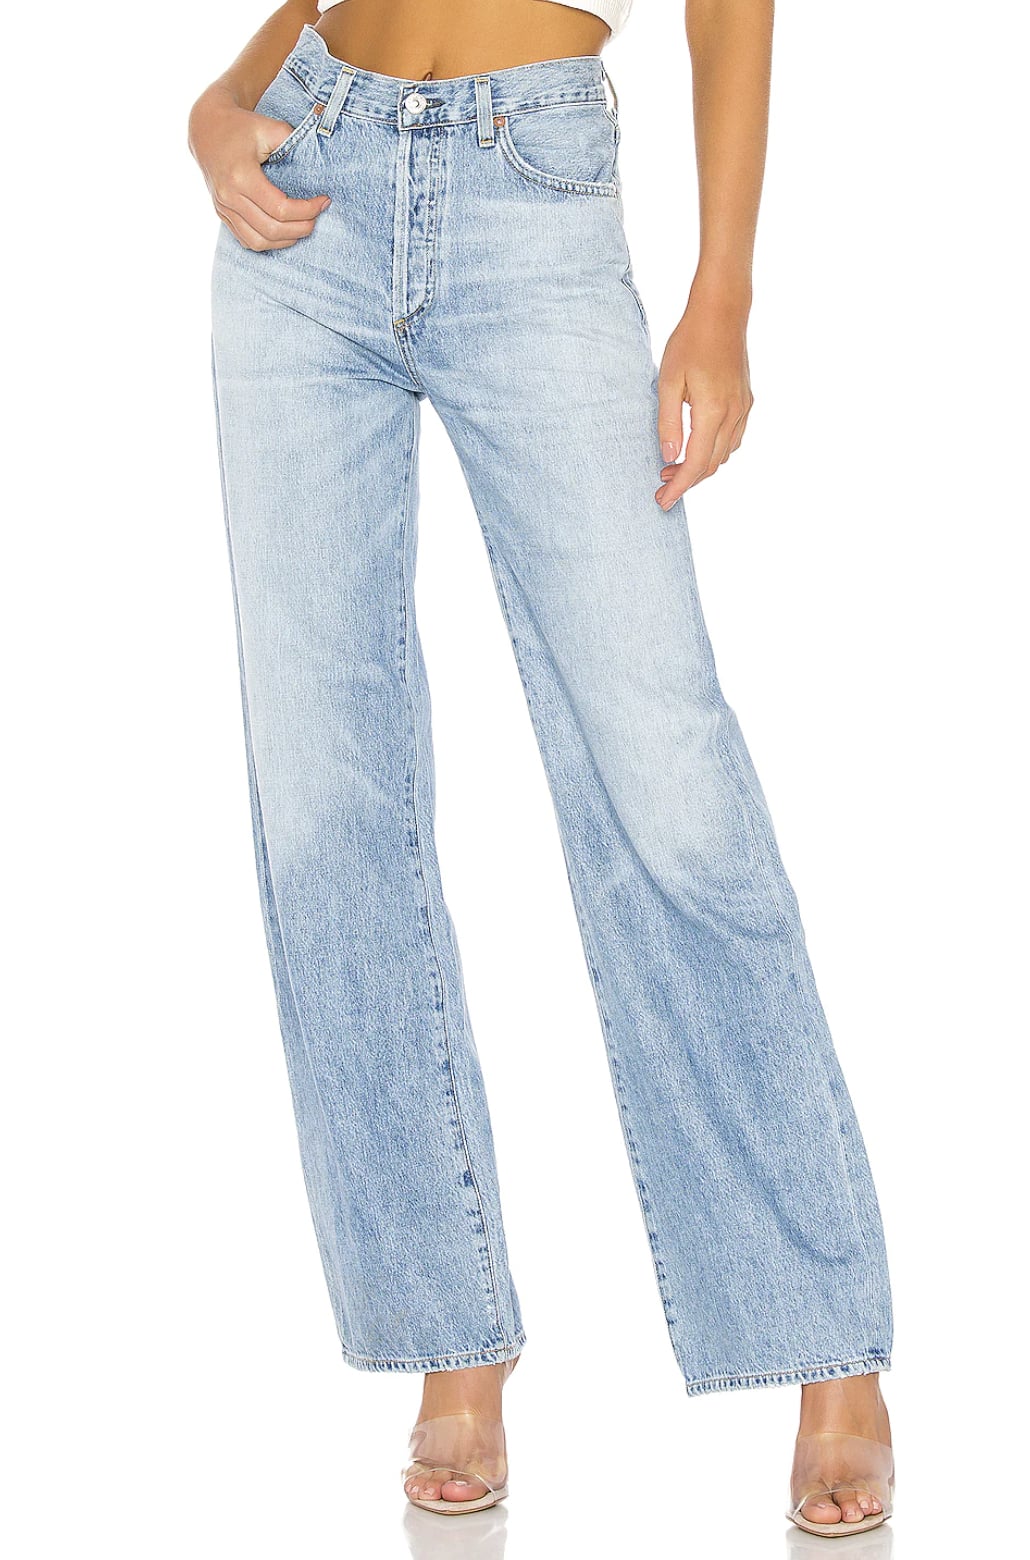 Petite-Friendly Abercrombie Jeans Review - Pumps & Push Ups